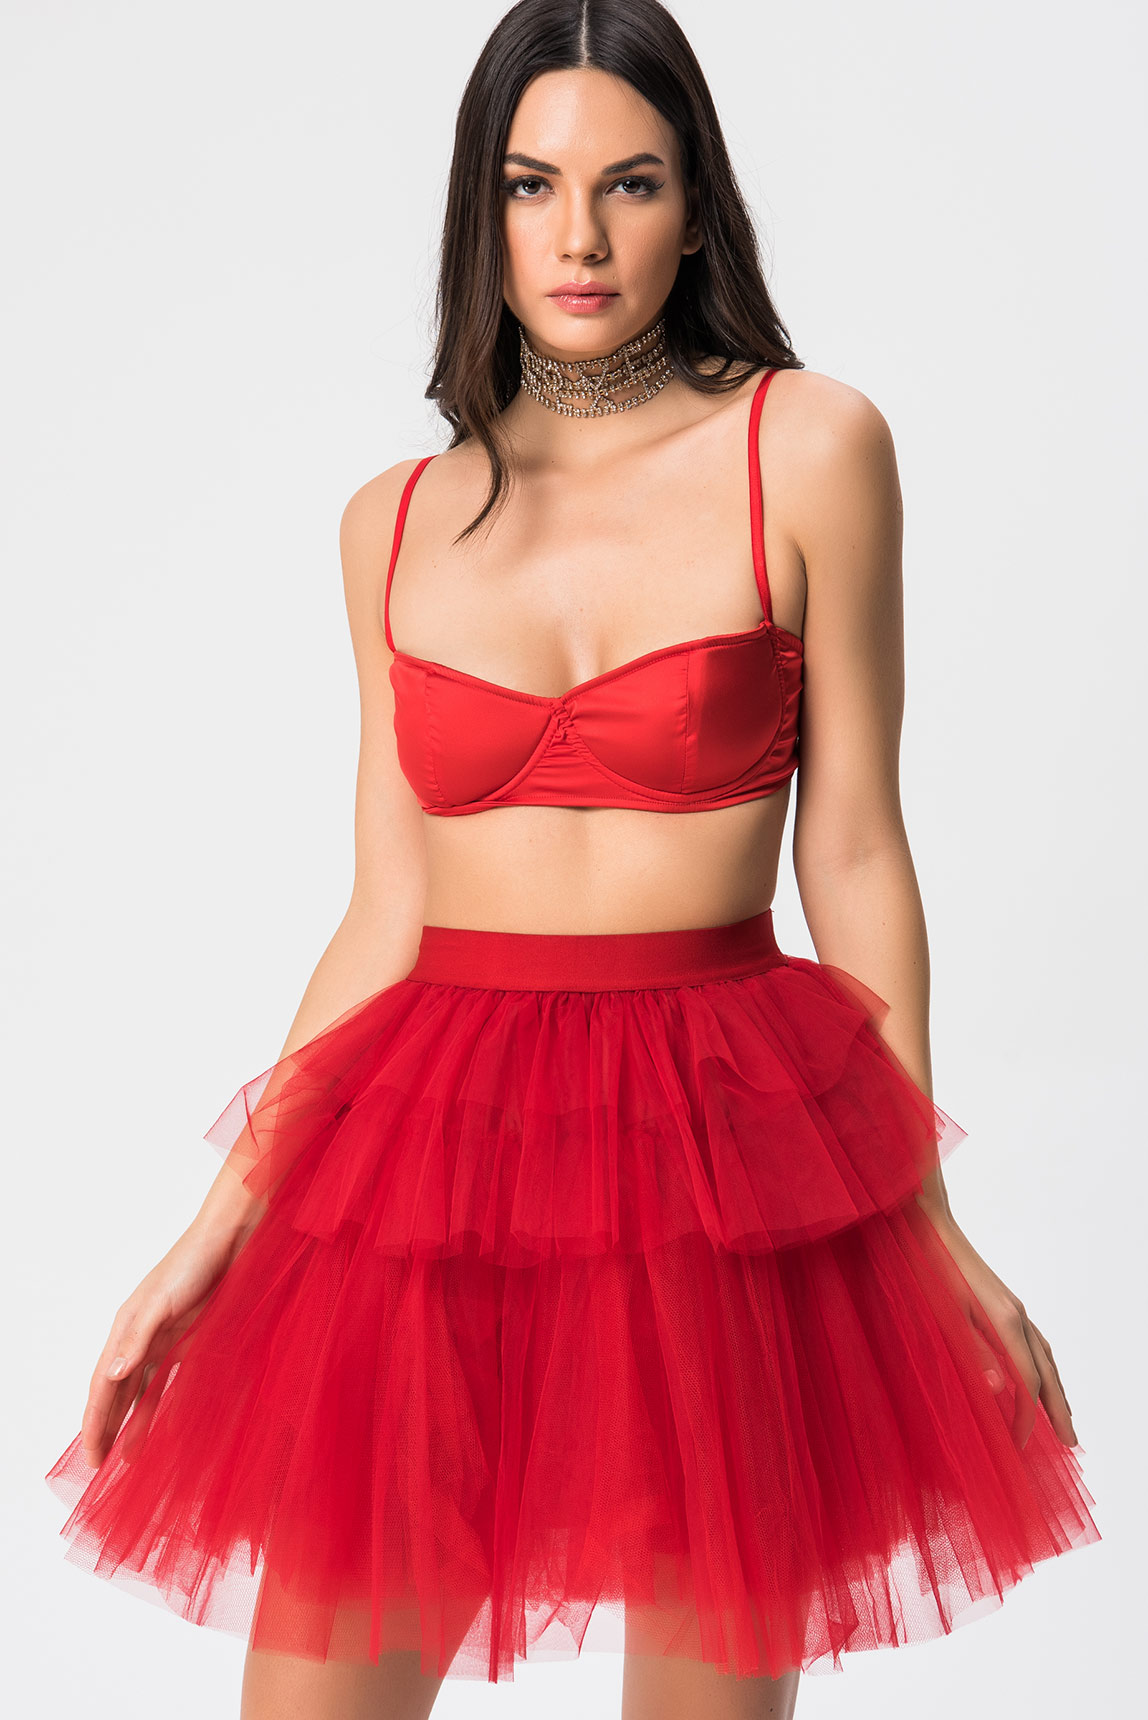 Wholesale Red Mini Tutu Skirt